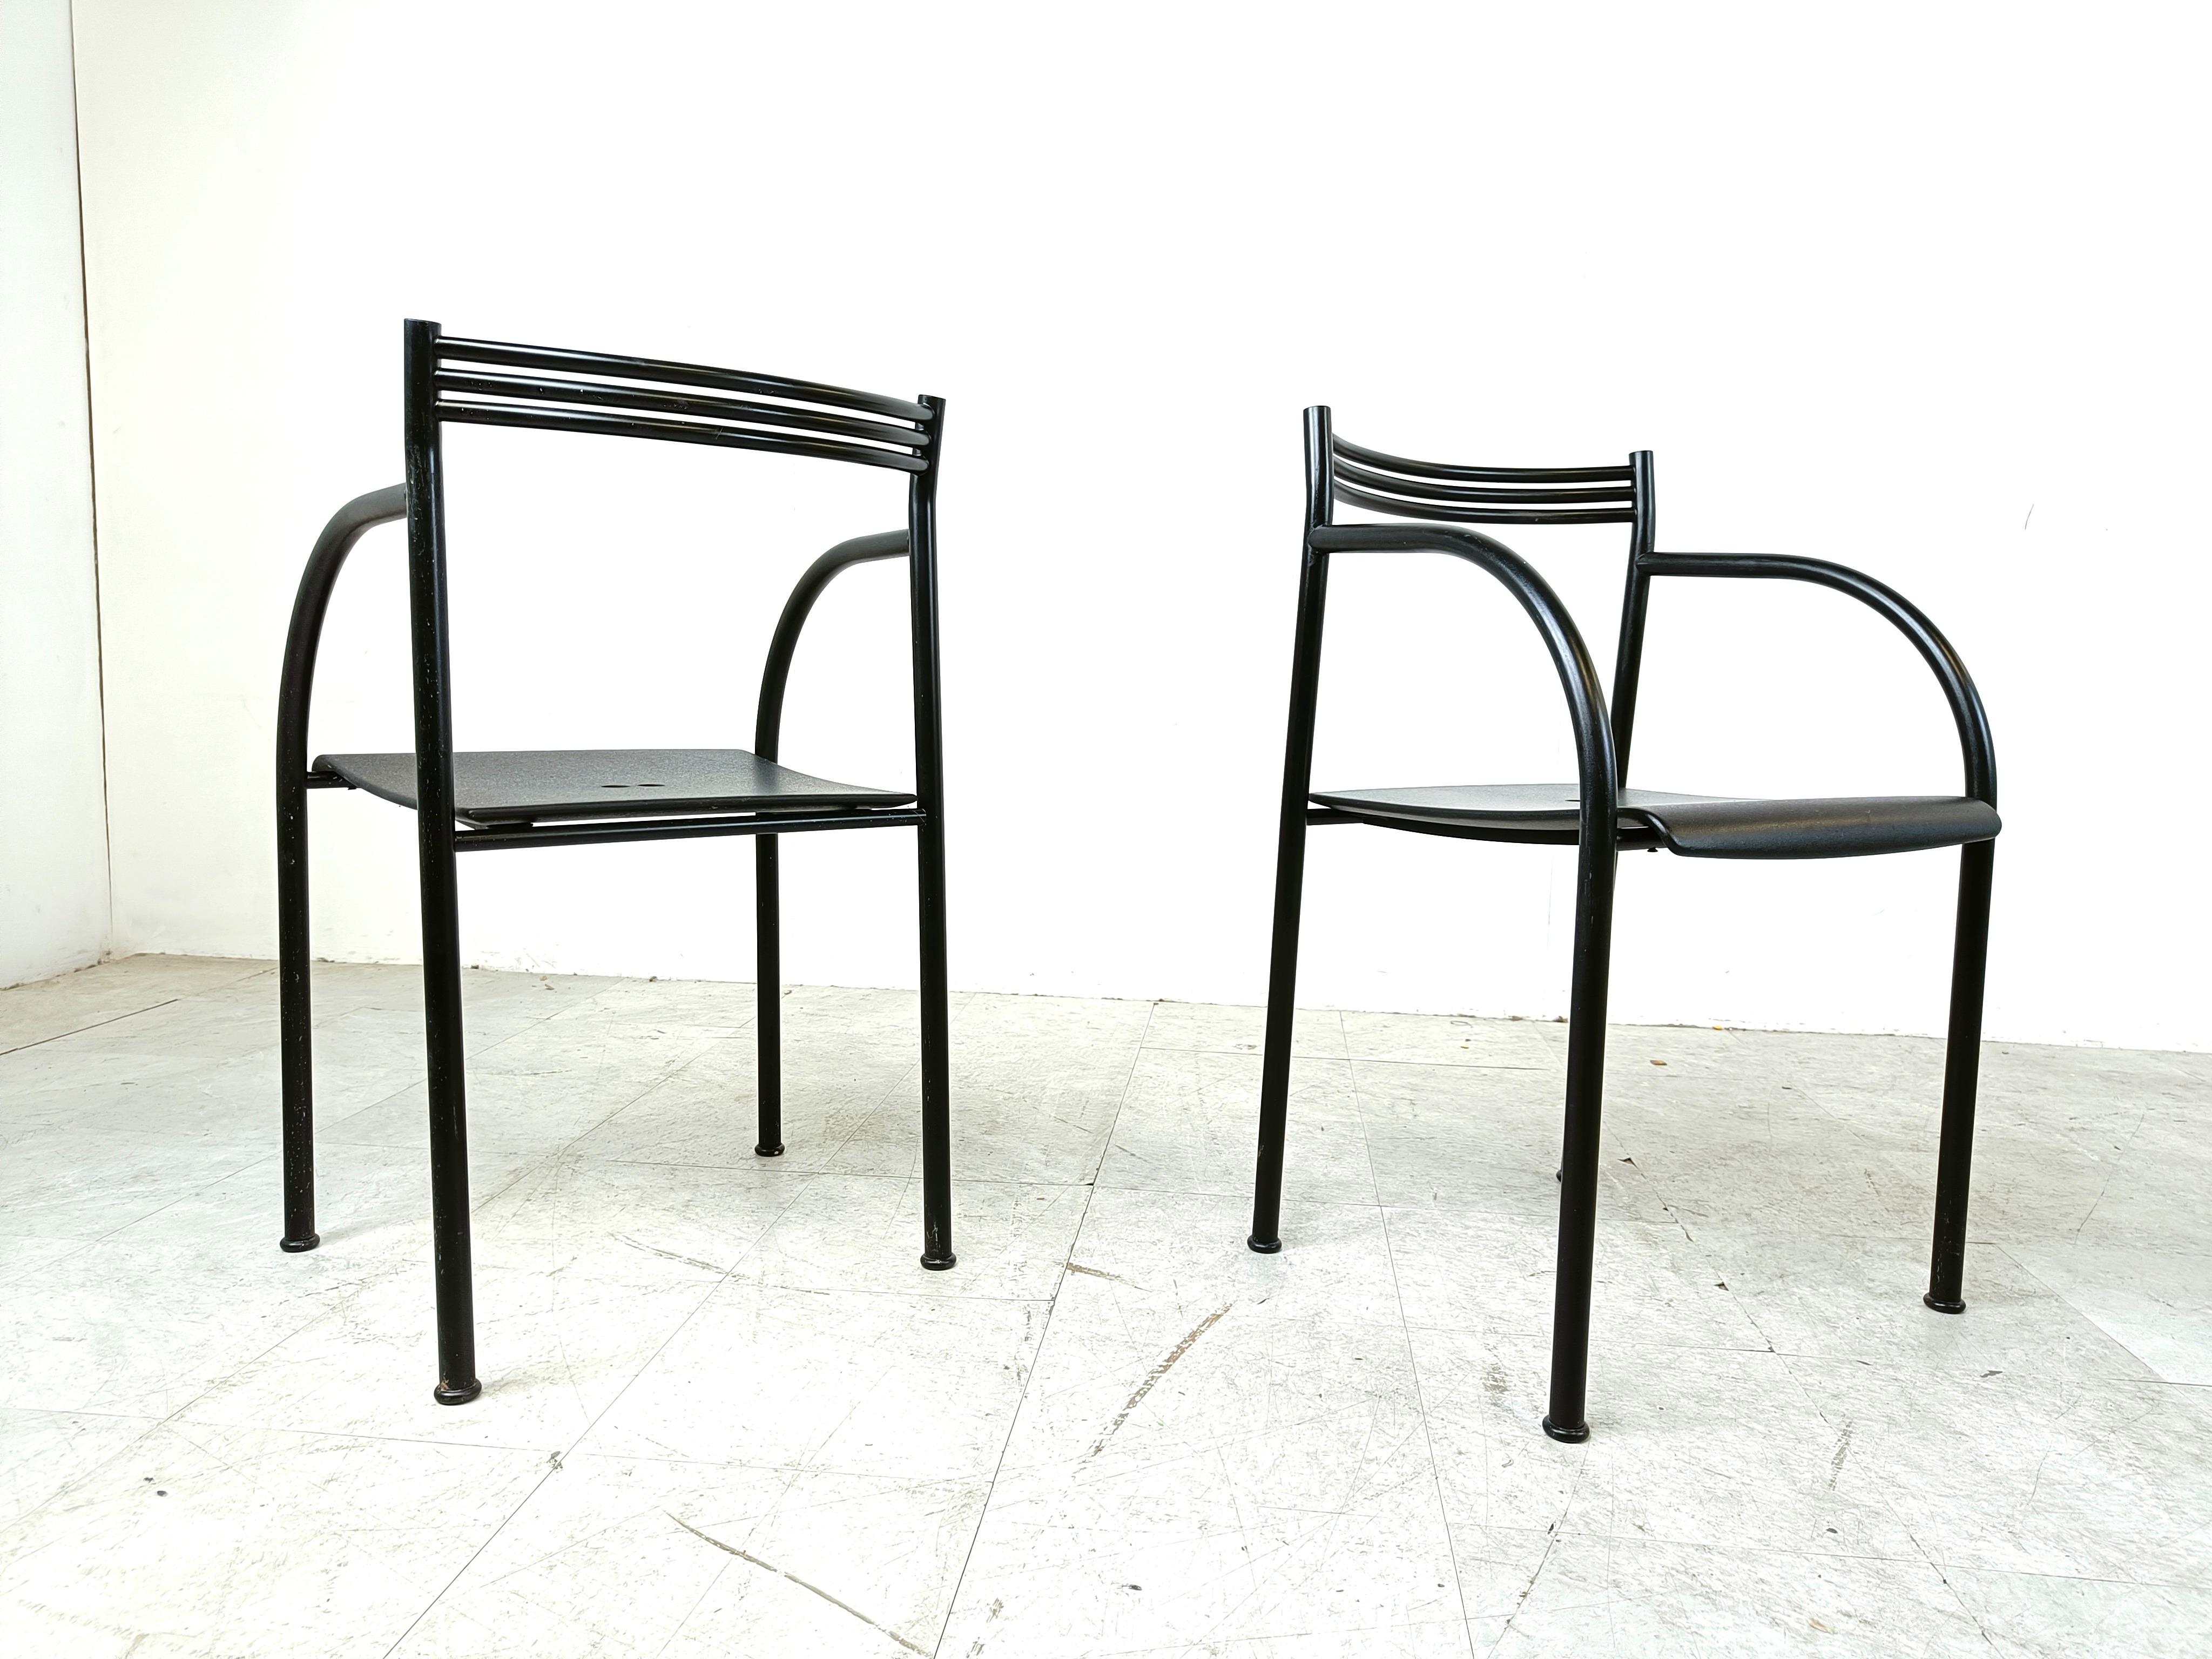 Ensemble de 4 très rares fauteuils 'Spanish Francesca' conçus par Philippe Starck pour Baleri Italia.

Ils ont été conçus en 1982.

Belle conception moderne de l'affichage.

Cadres en métal noir avec une fine gaine de métal en guise de siège.

Peut